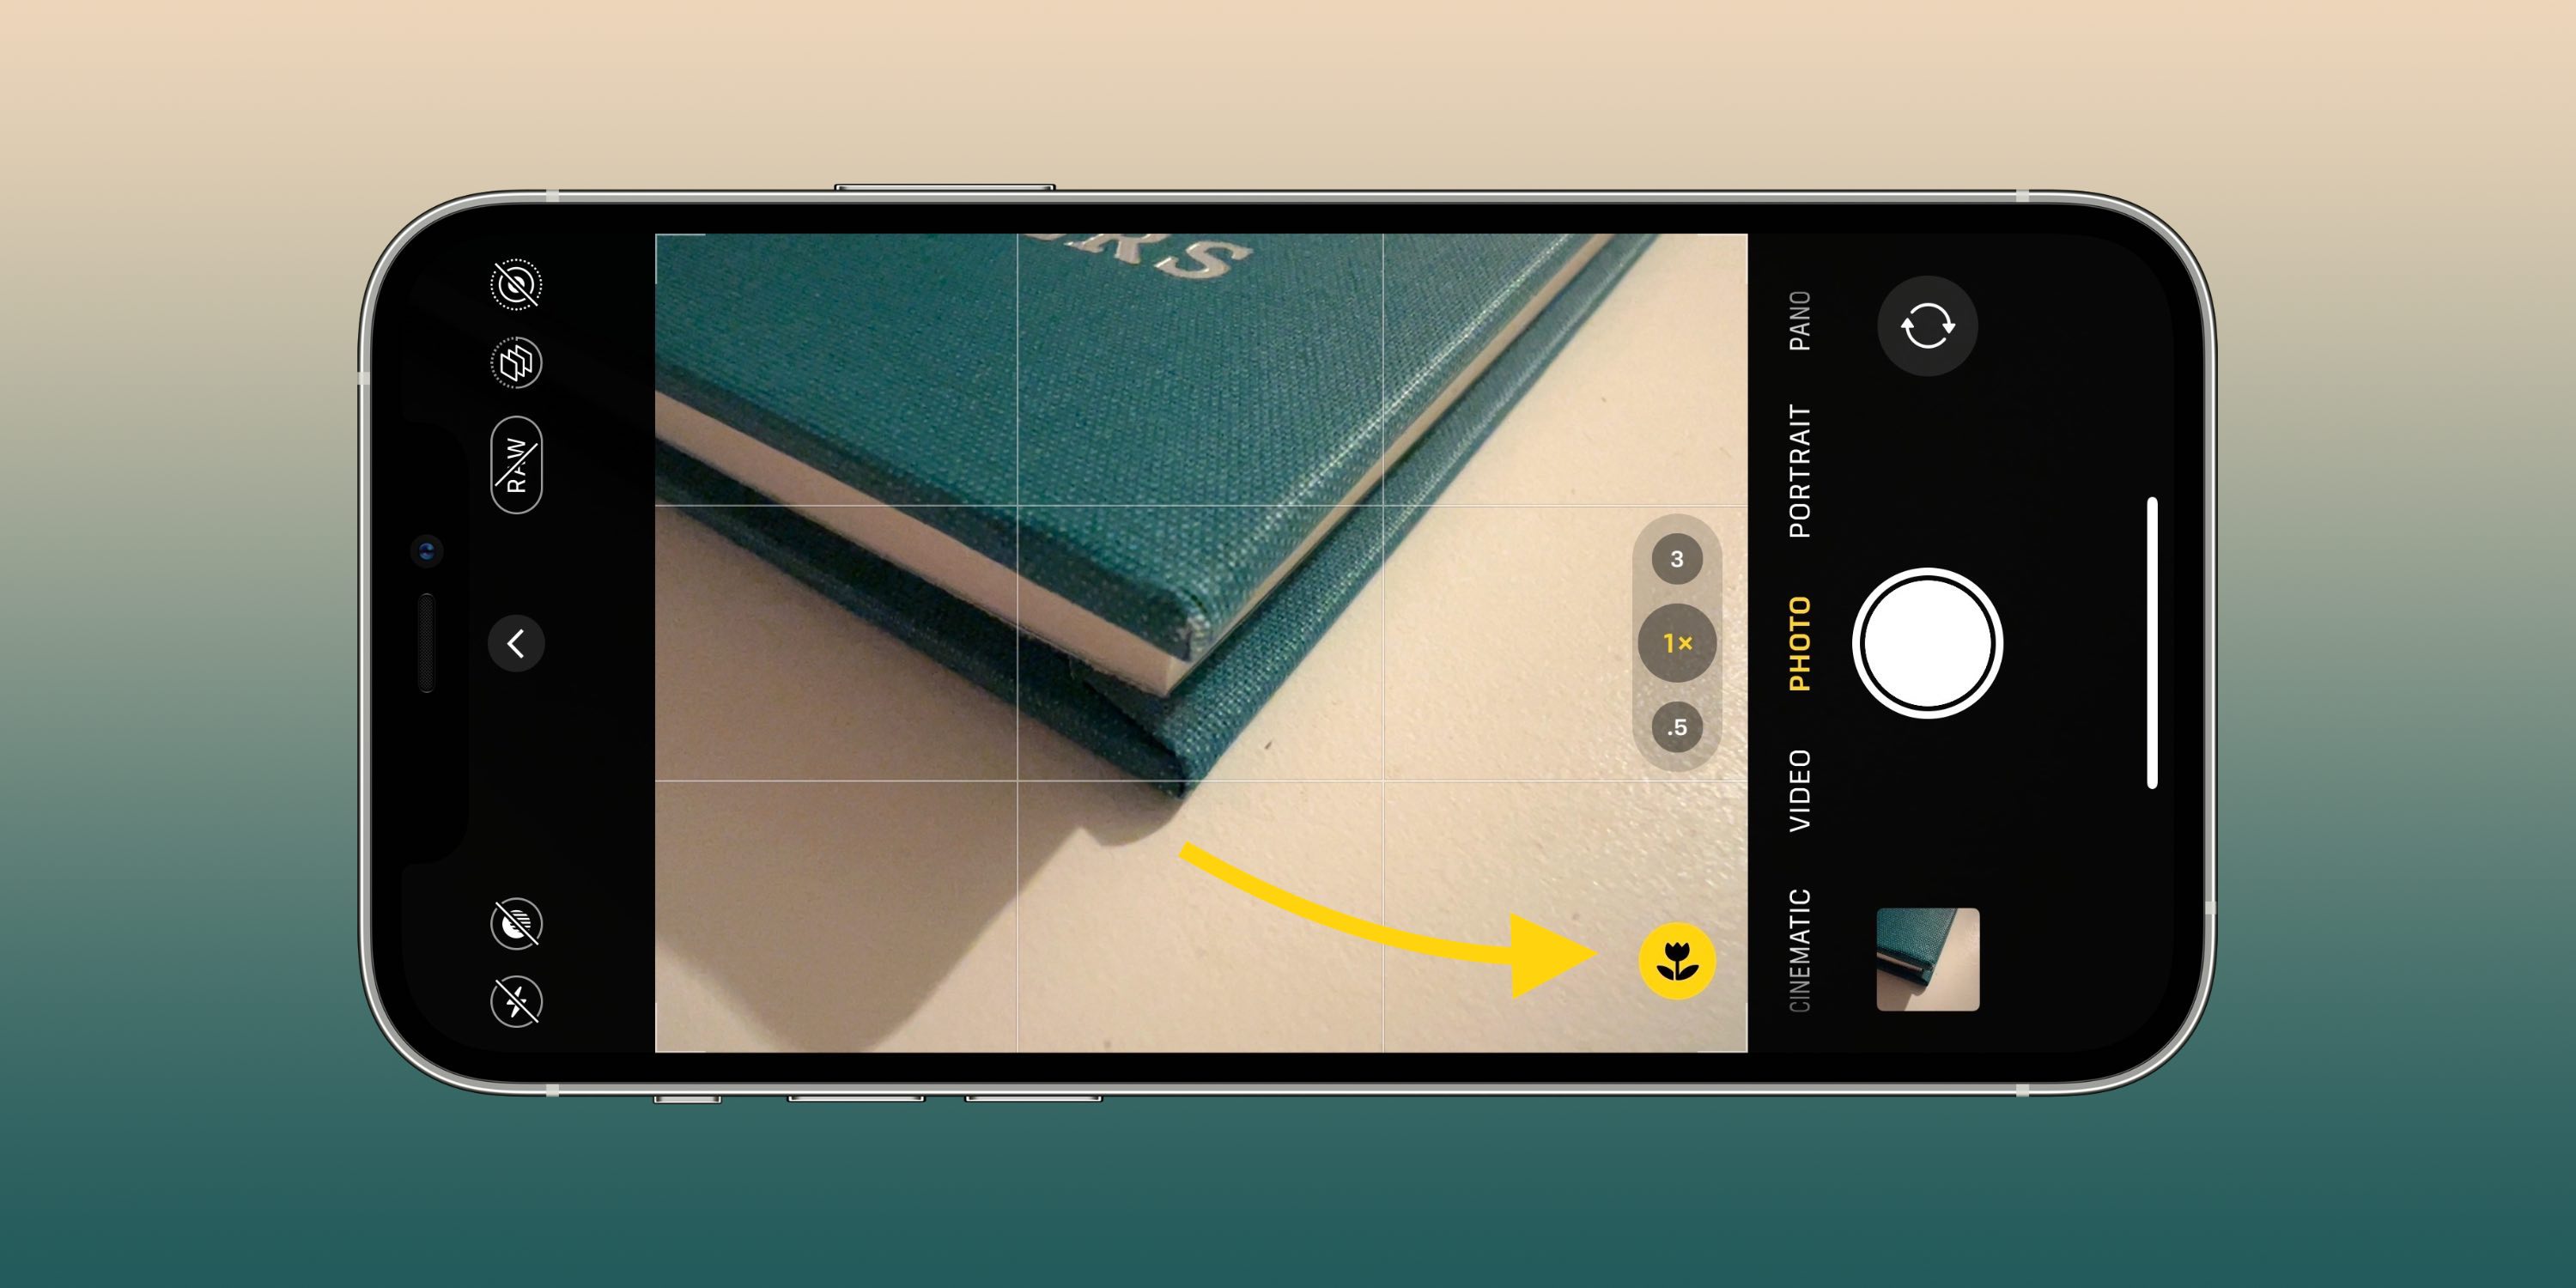 Bu kamera ayarları, iPhone'unuzda daha iyi fotoğraflar ve videolar çekmenize yardımcı olabilir